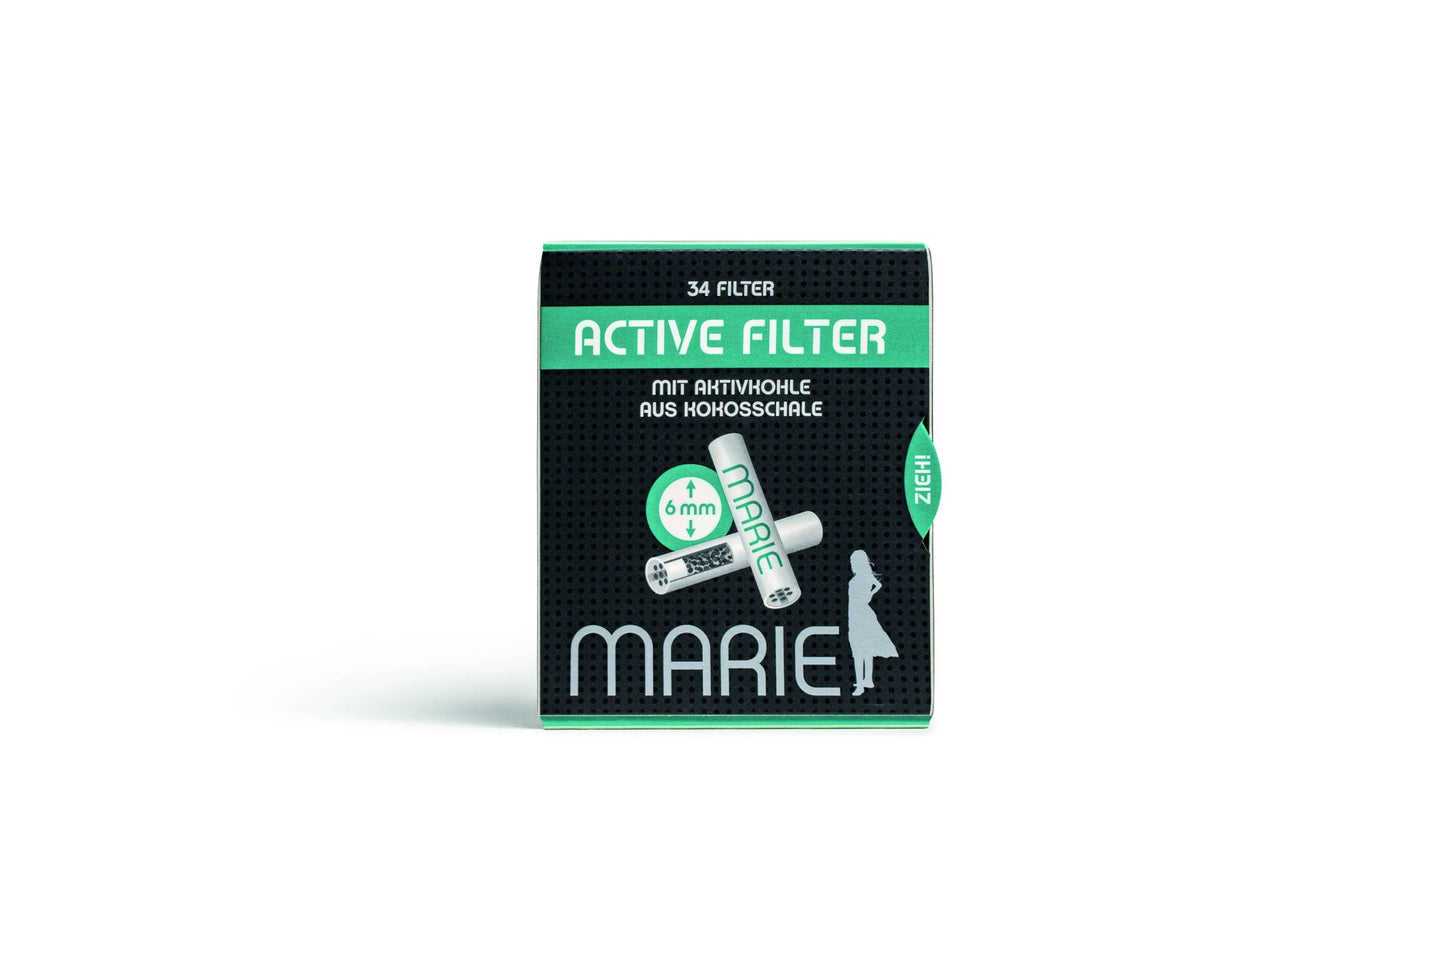 MARIE filtr s aktivním uhlím | 6mm | 34 ks